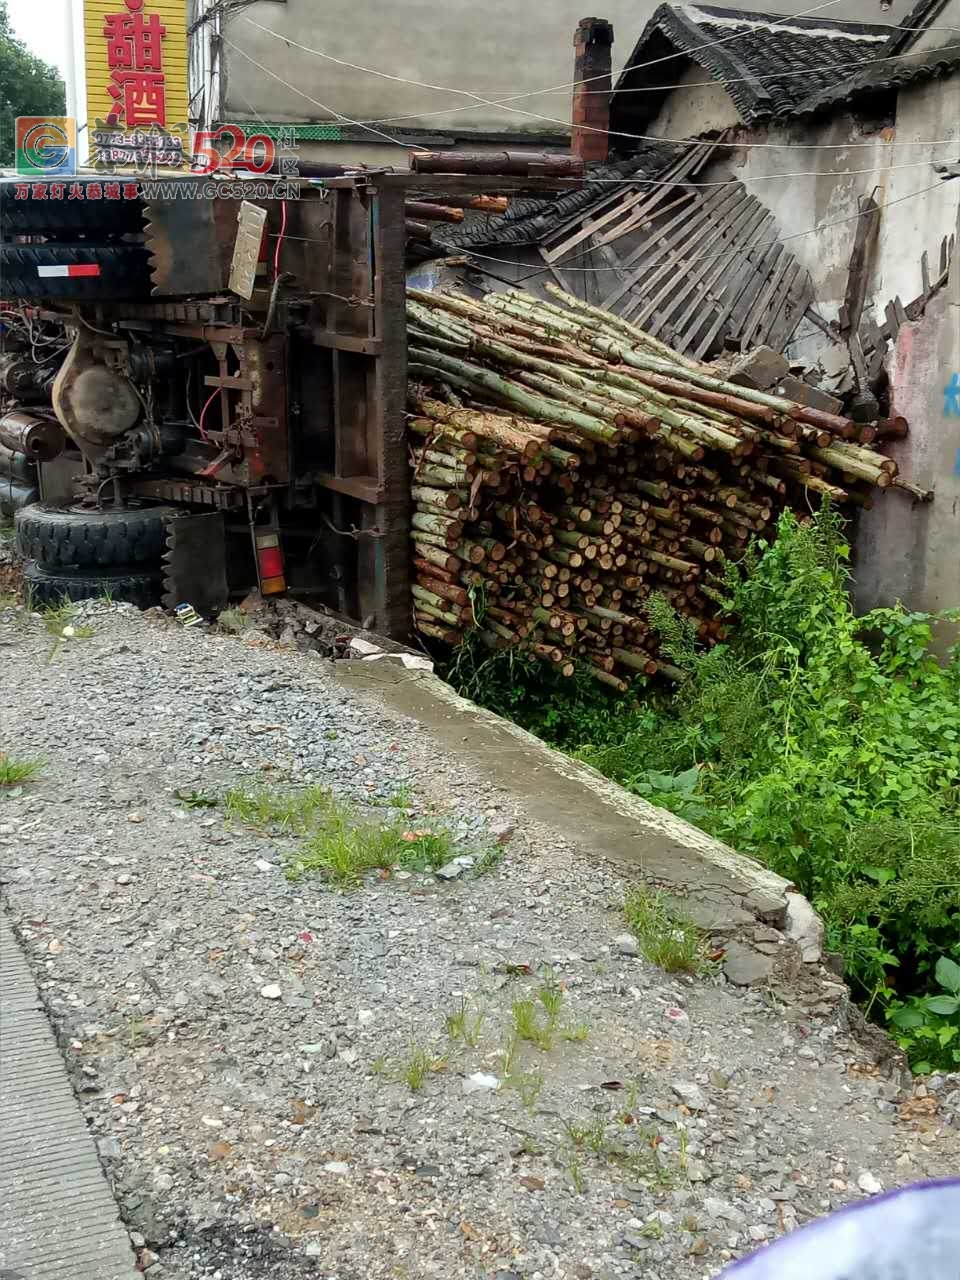 昨晚加会酒饼厂的一间民房被一辆停在路边装满木头货车压到，所幸无人员伤害494 / 作者:流浪者 / 帖子ID:235176